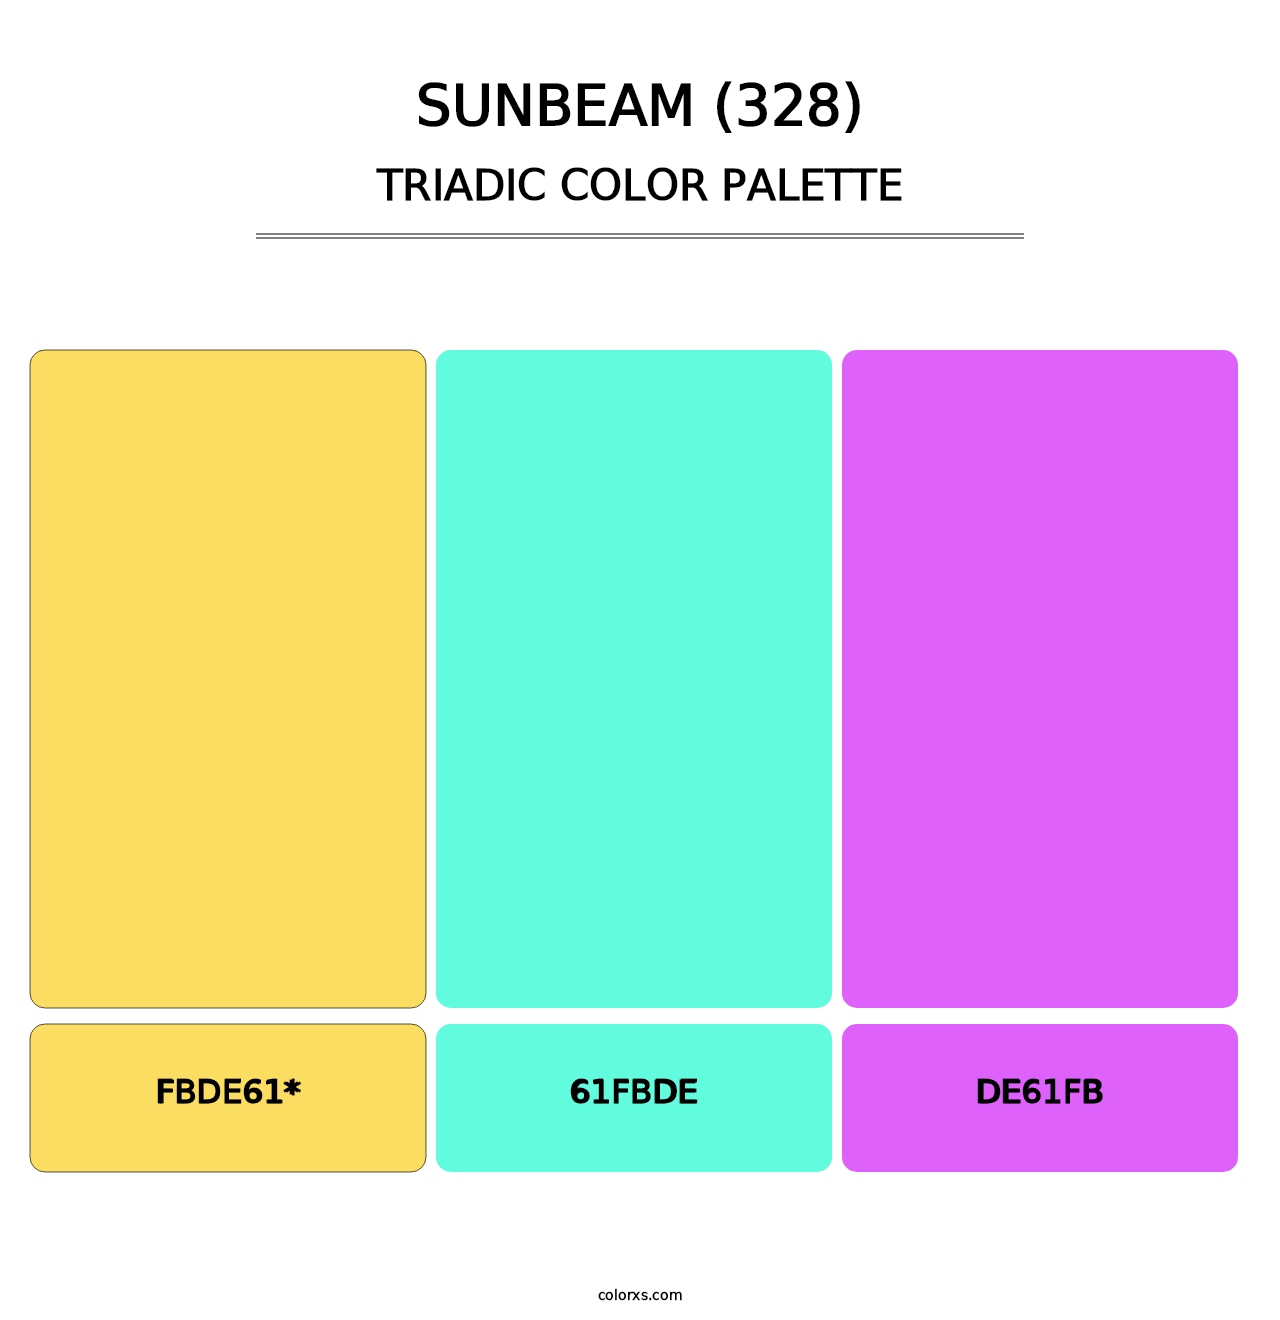 Sunbeam (328) - Triadic Color Palette